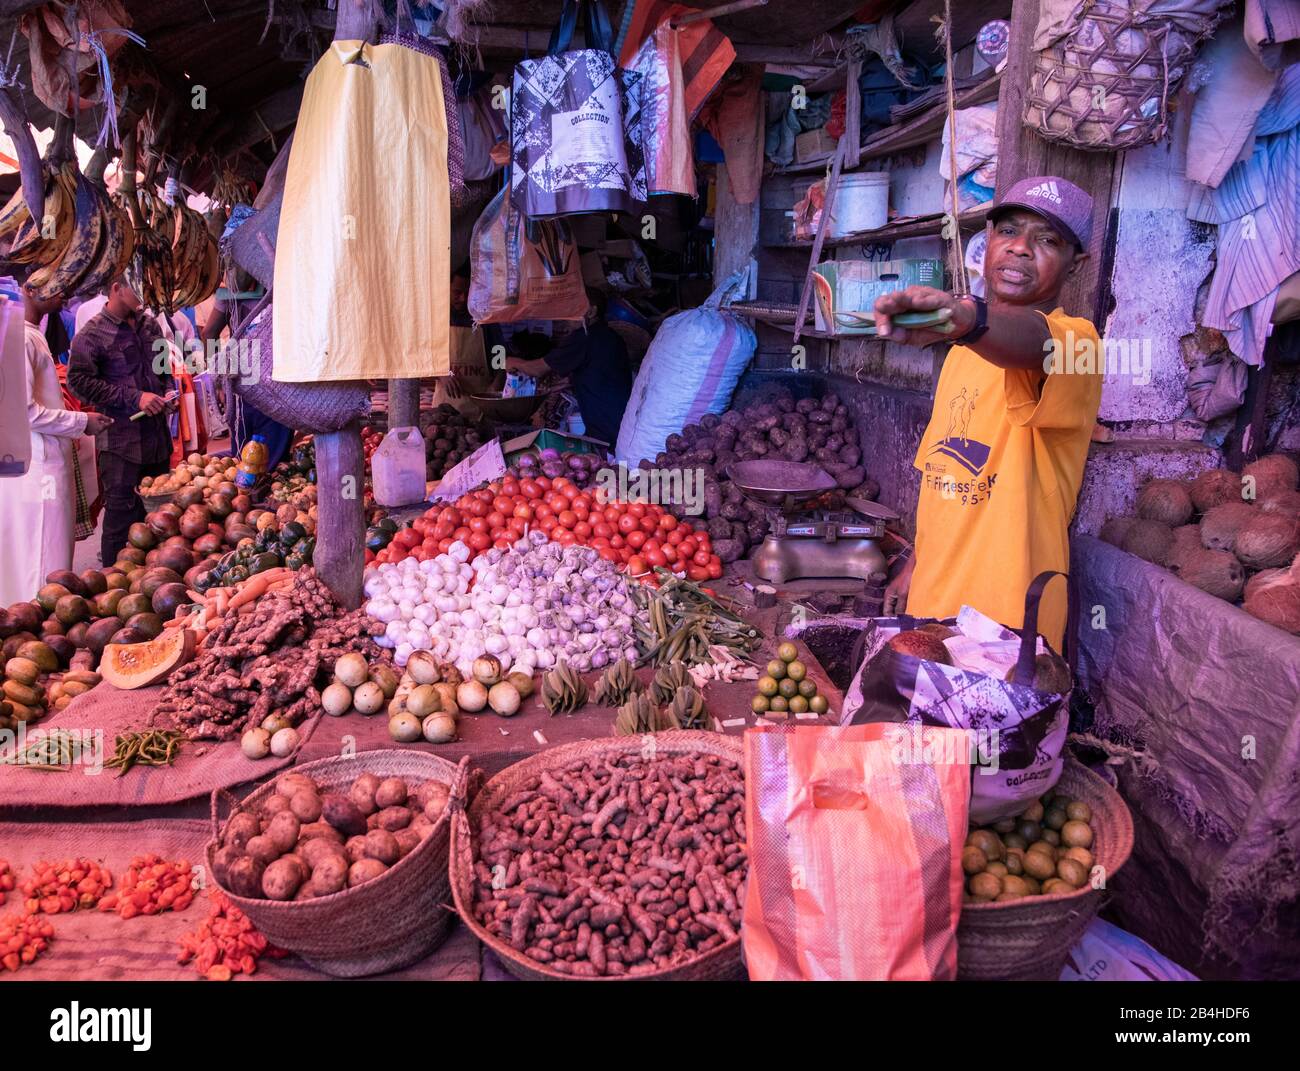 Destinazione Tanzania, Isola Zanzibar: Impressioni da Stone Town, il più antico quartiere di Zanzibar, la capitale dello stato tanzaniano Zanzibar alla fine del Ramadan. Mercanti vegetali nella sala del mercato. Foto Stock